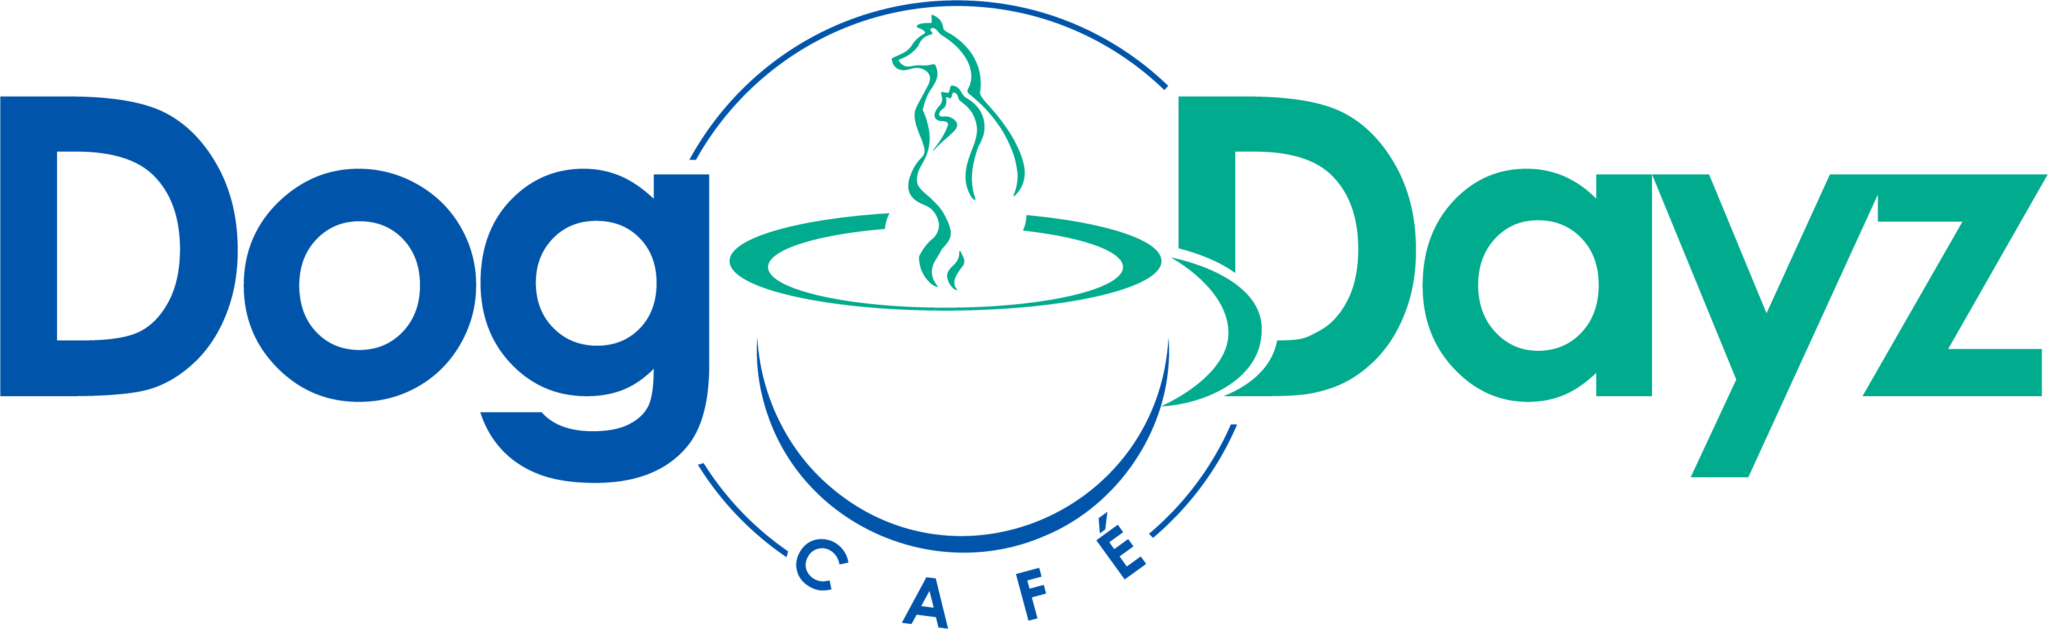 Dog Dayz Café